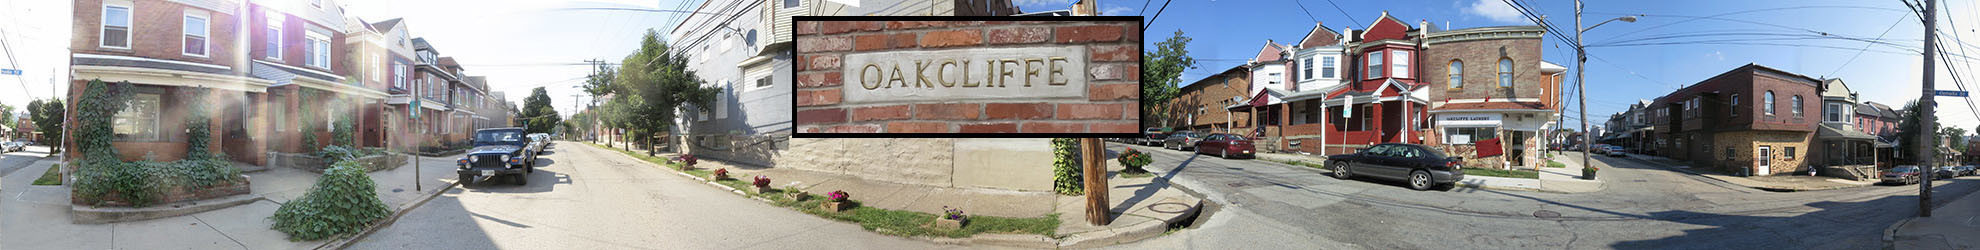 Oakcliffe 2016